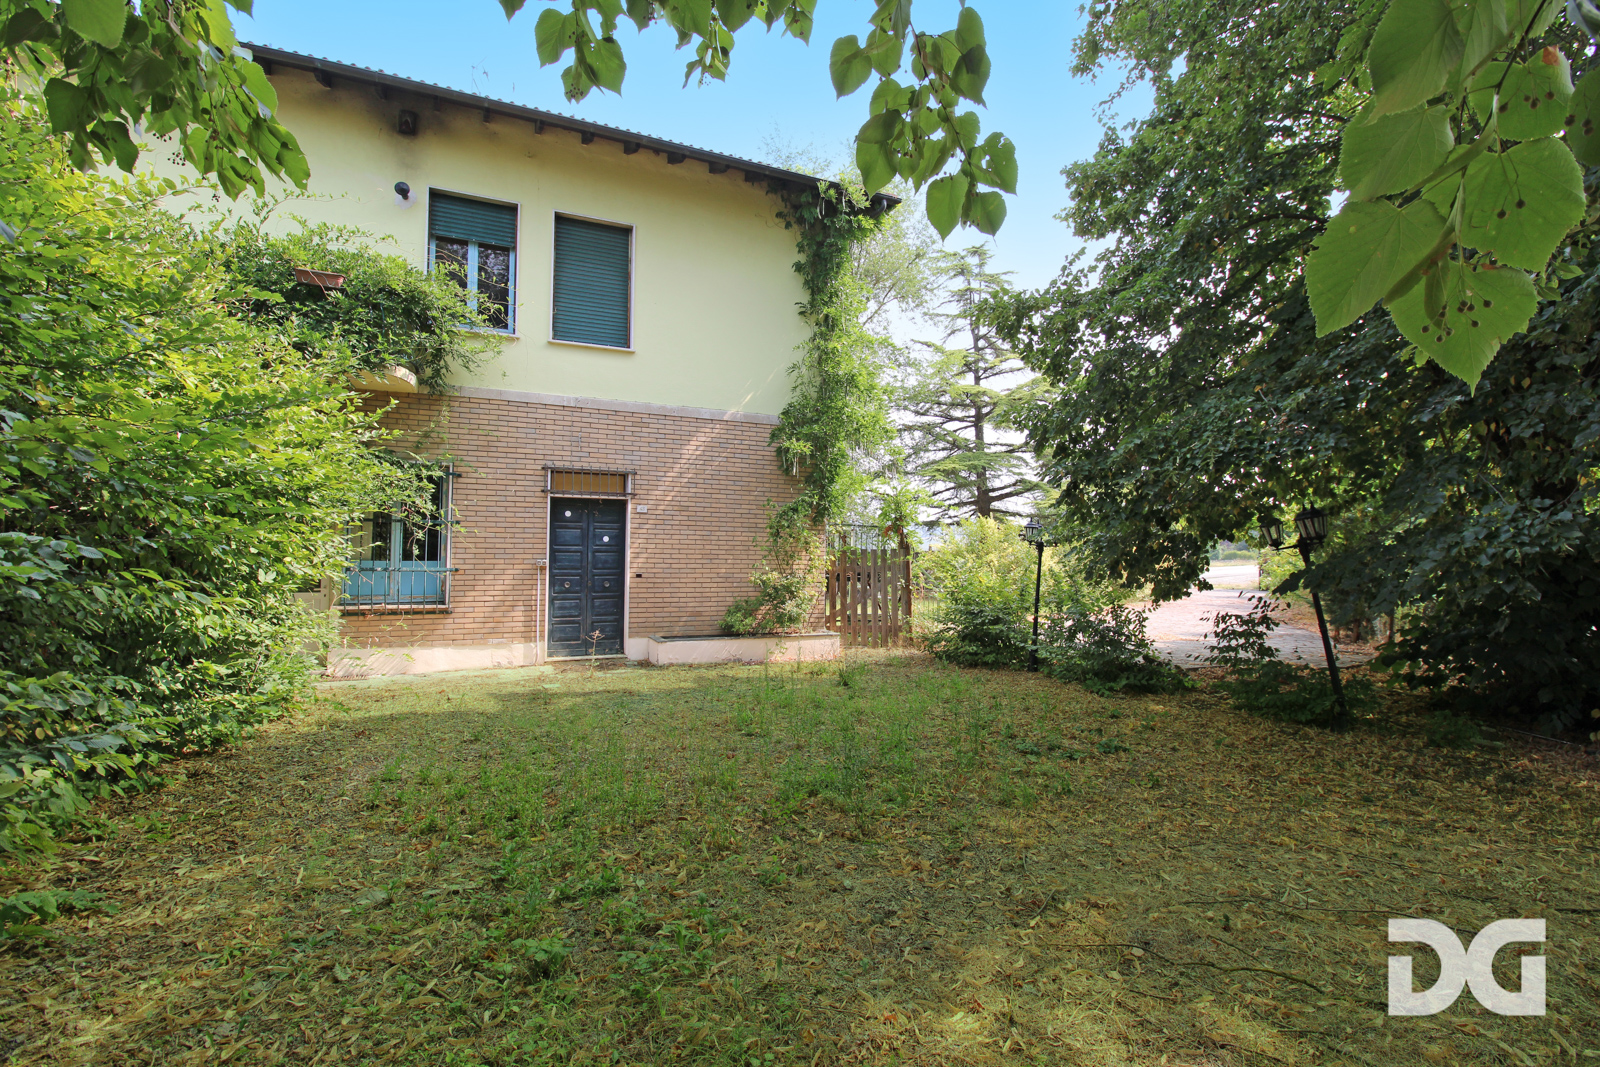 Immobiliare Del Guasta CASTELLETTO D’ORBA – CASA INDIPENDENTE MQ. 260 CON RISTORANTE E GIARDINO 